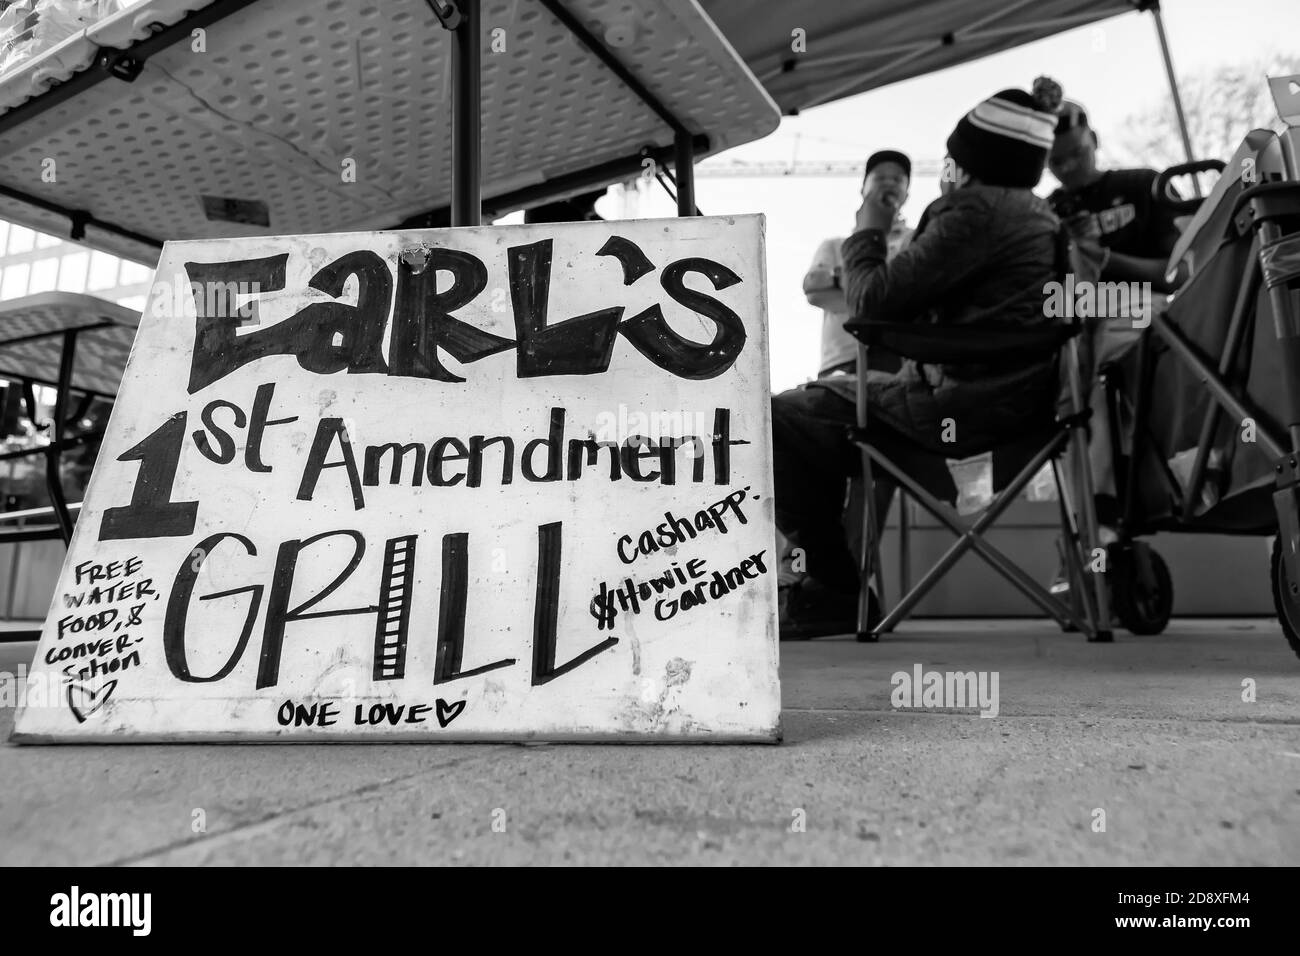 Earl's First Amendment Grill est gratuit et sert les manifestants anti-racisme et les sans-abri depuis le début des manifestations, Washington, DC, Etats-Unis Banque D'Images